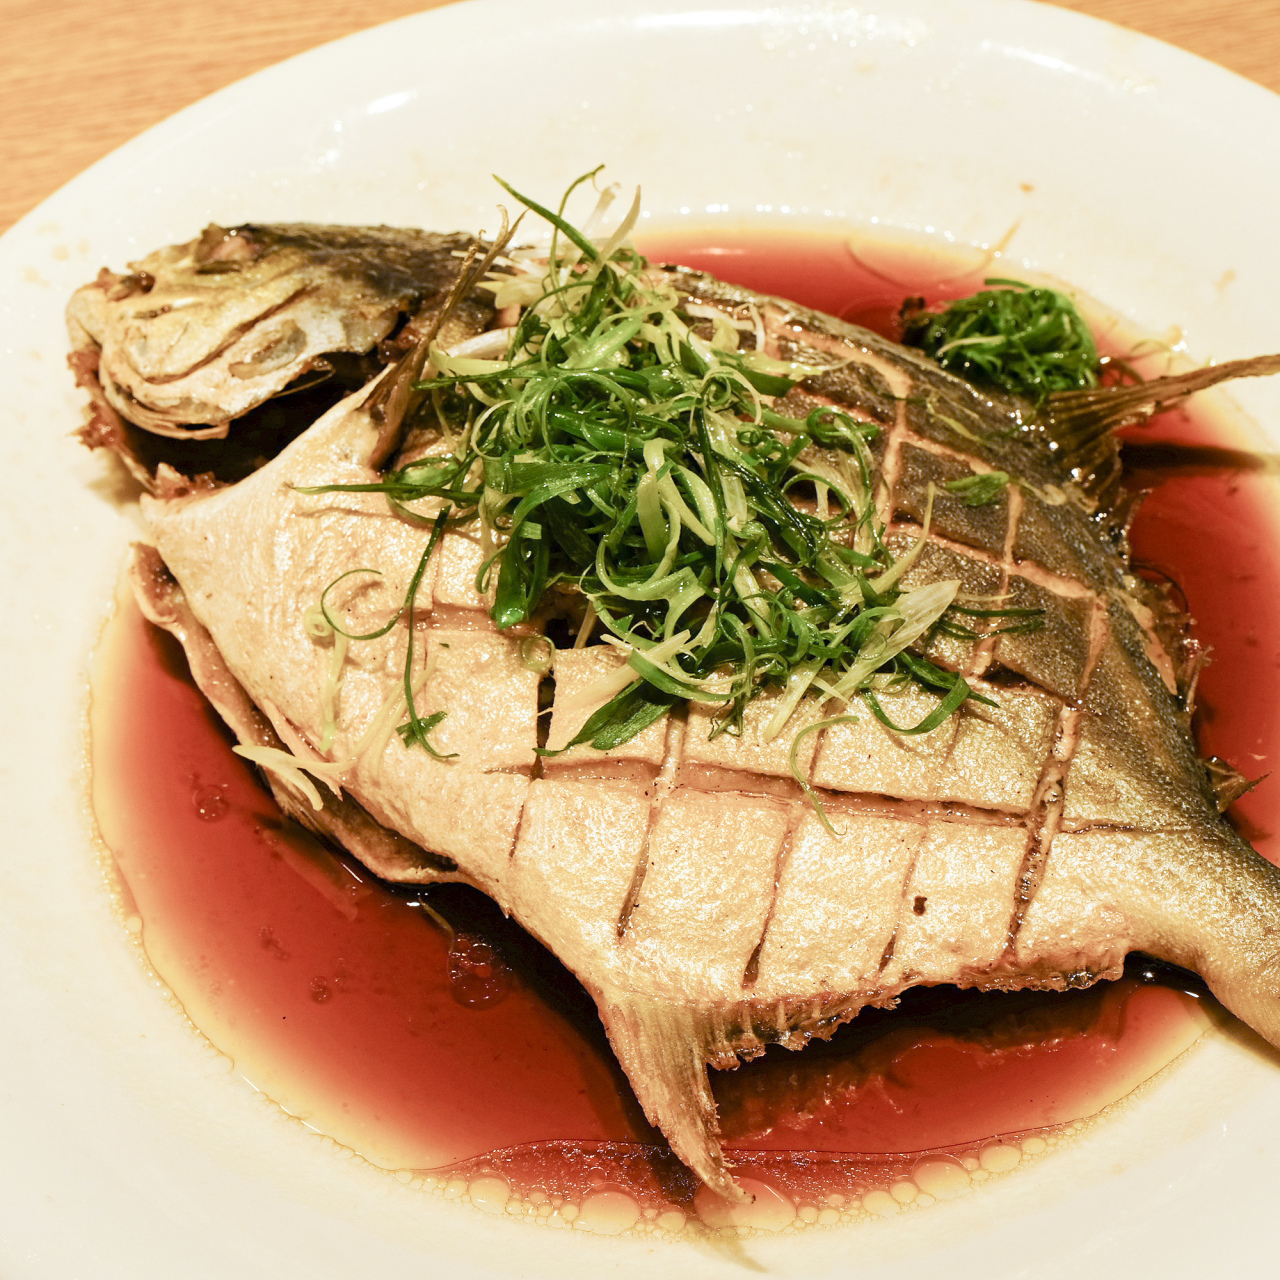 清蒸武昌鱼——口感鲜美,营养丰富的美食 关注我吧,分享更多家常美味